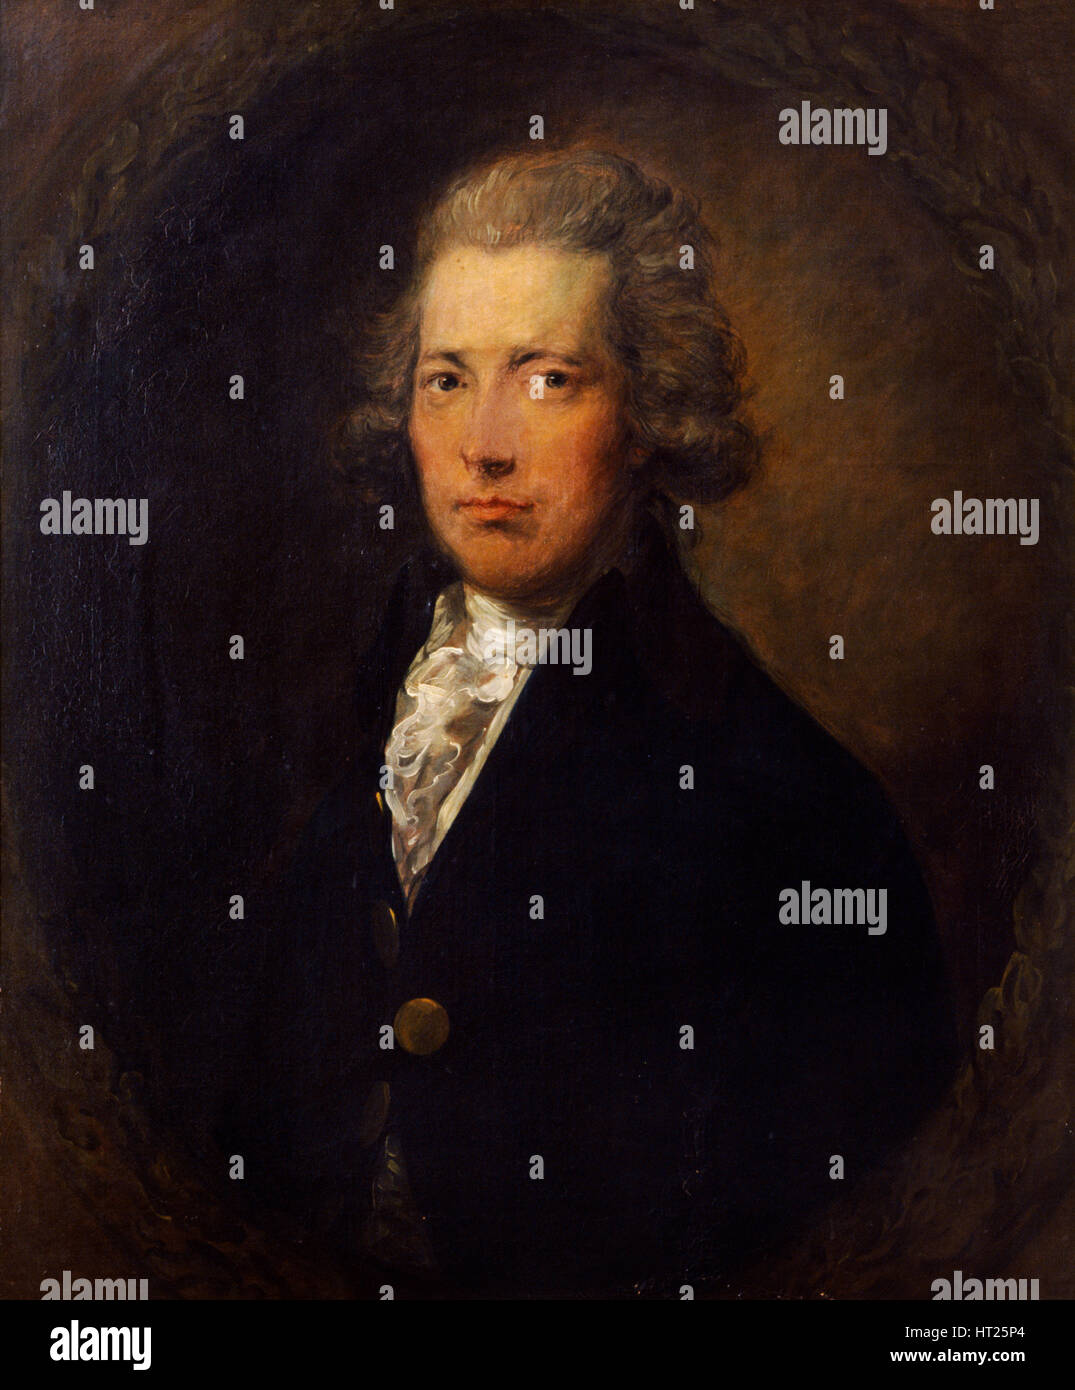 Portrait de William Pitt le Jeune, homme d'État britannique, c1787. Artiste : Gainsborough Dupont. Banque D'Images